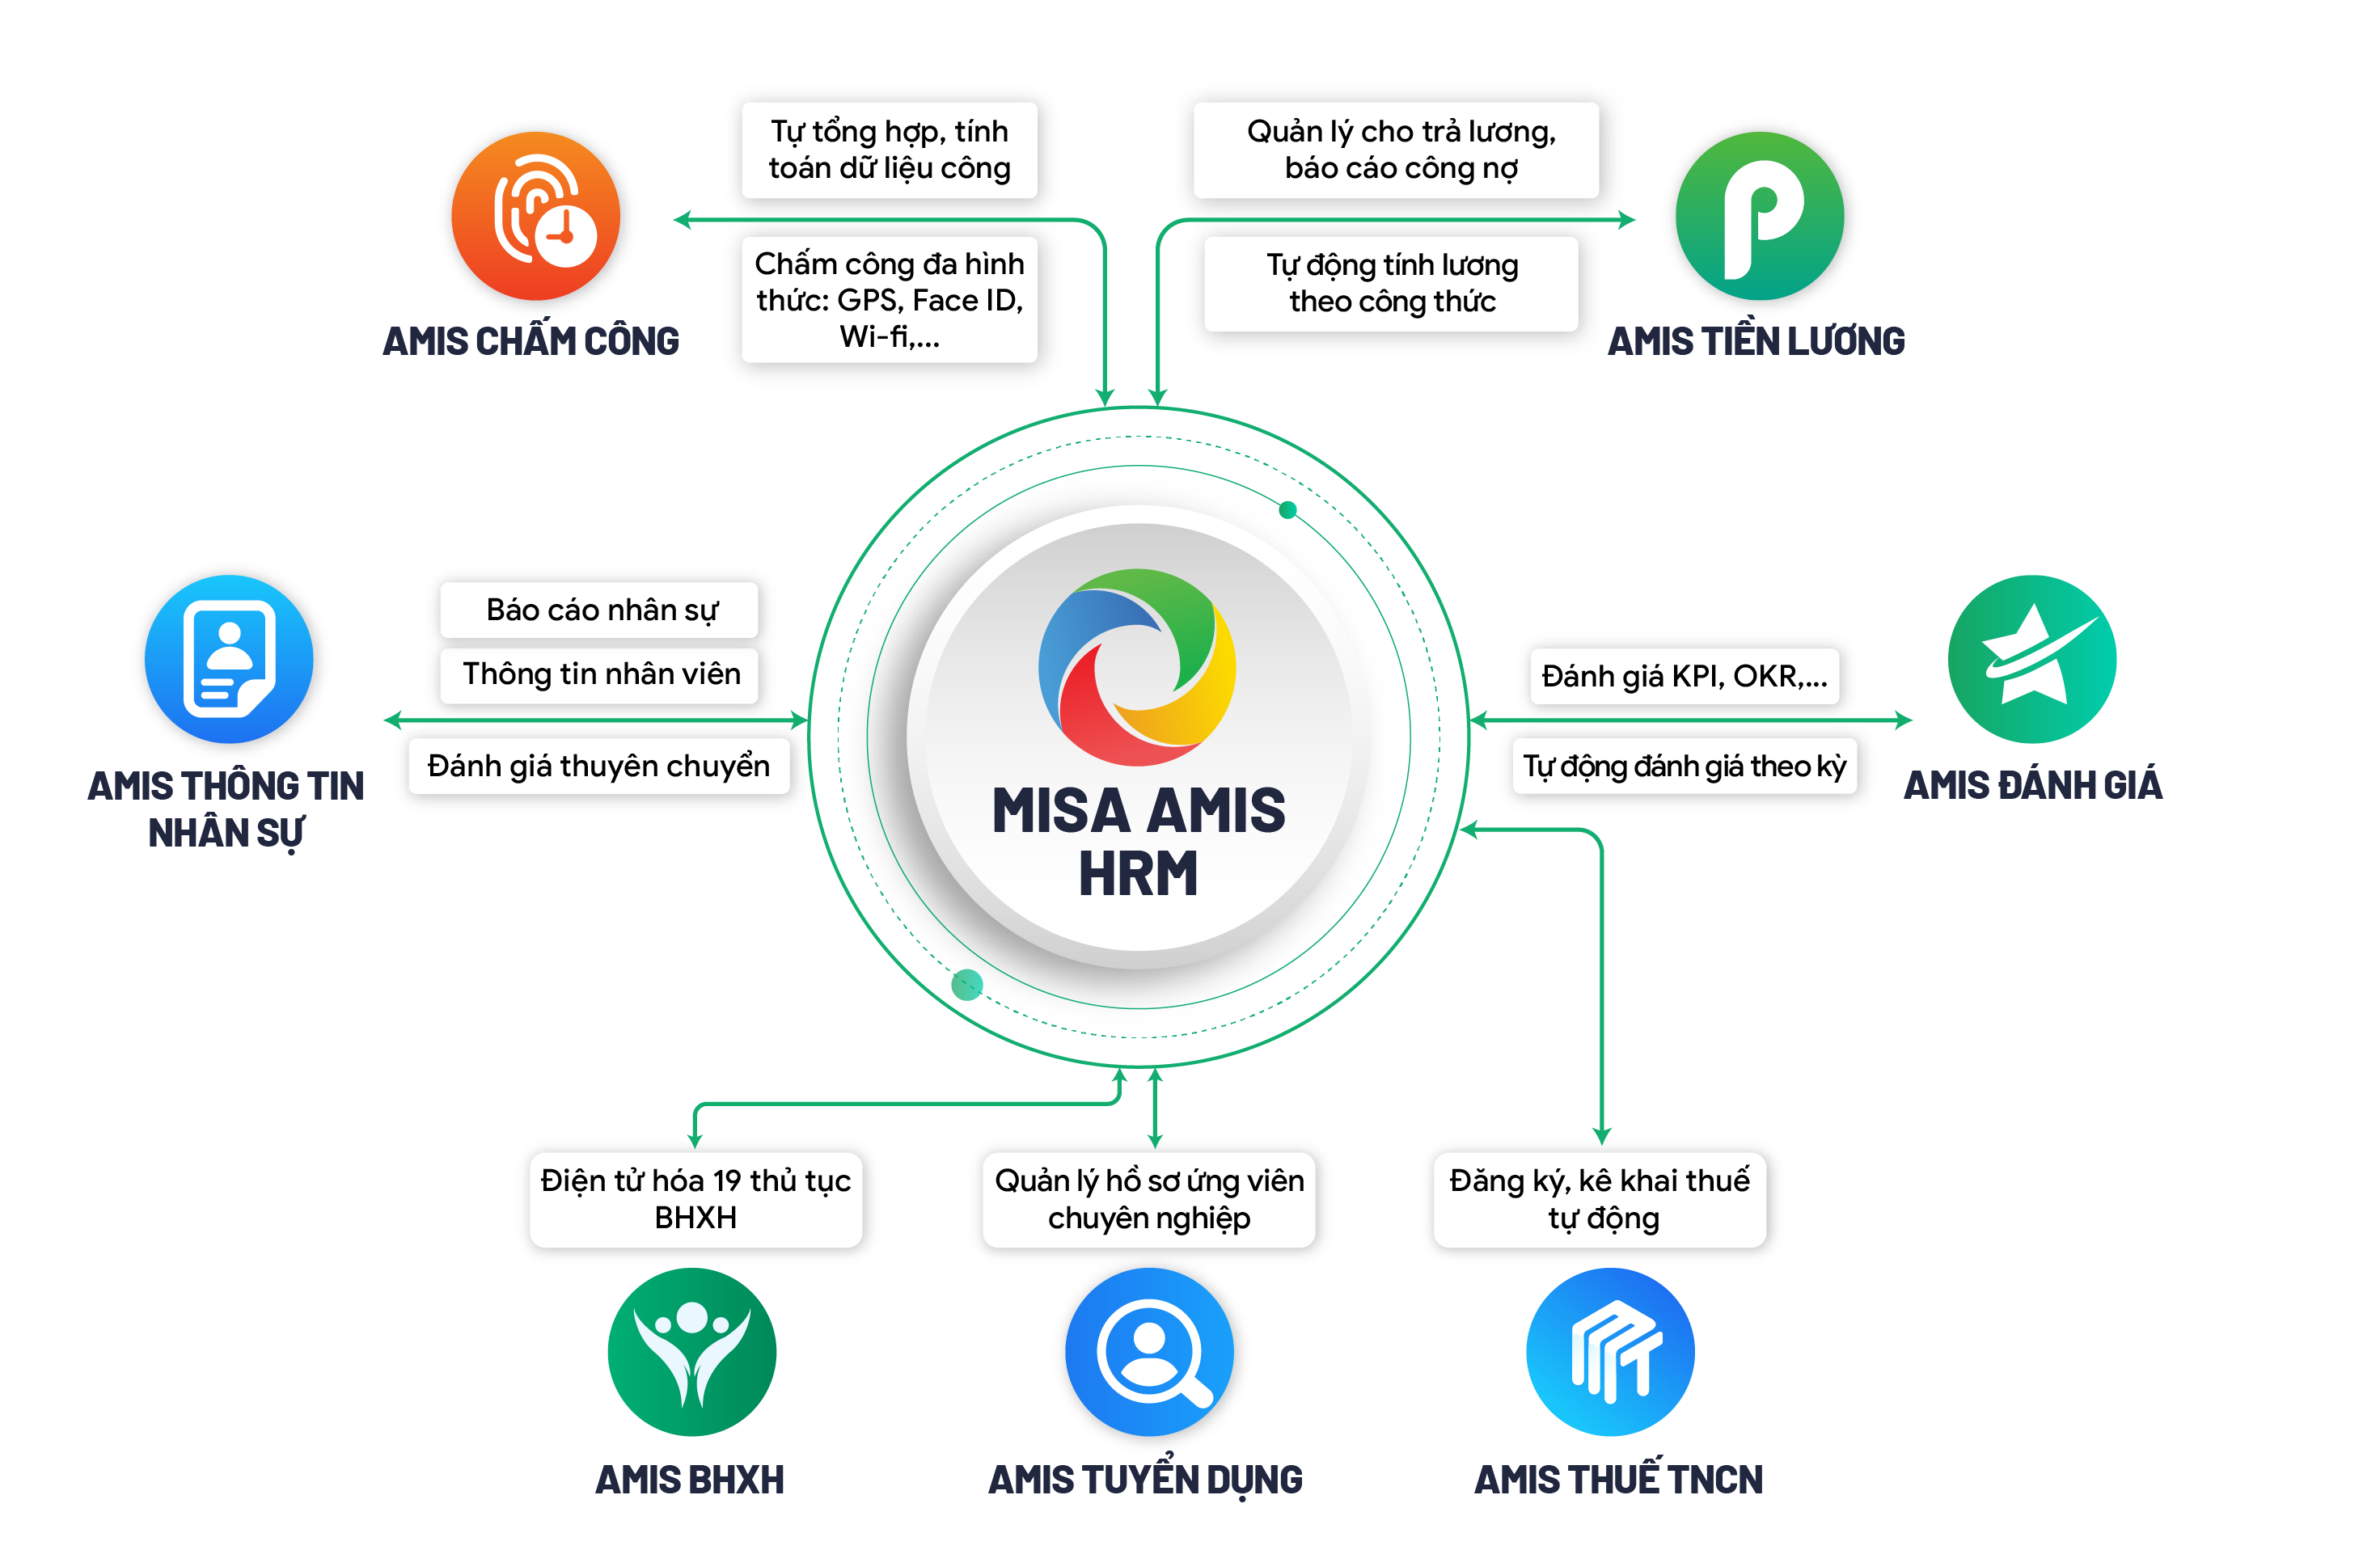 AMIS Thông tin nhân sự liên thông với các Phần mềm trong cùng hệ thống MISA AMIS